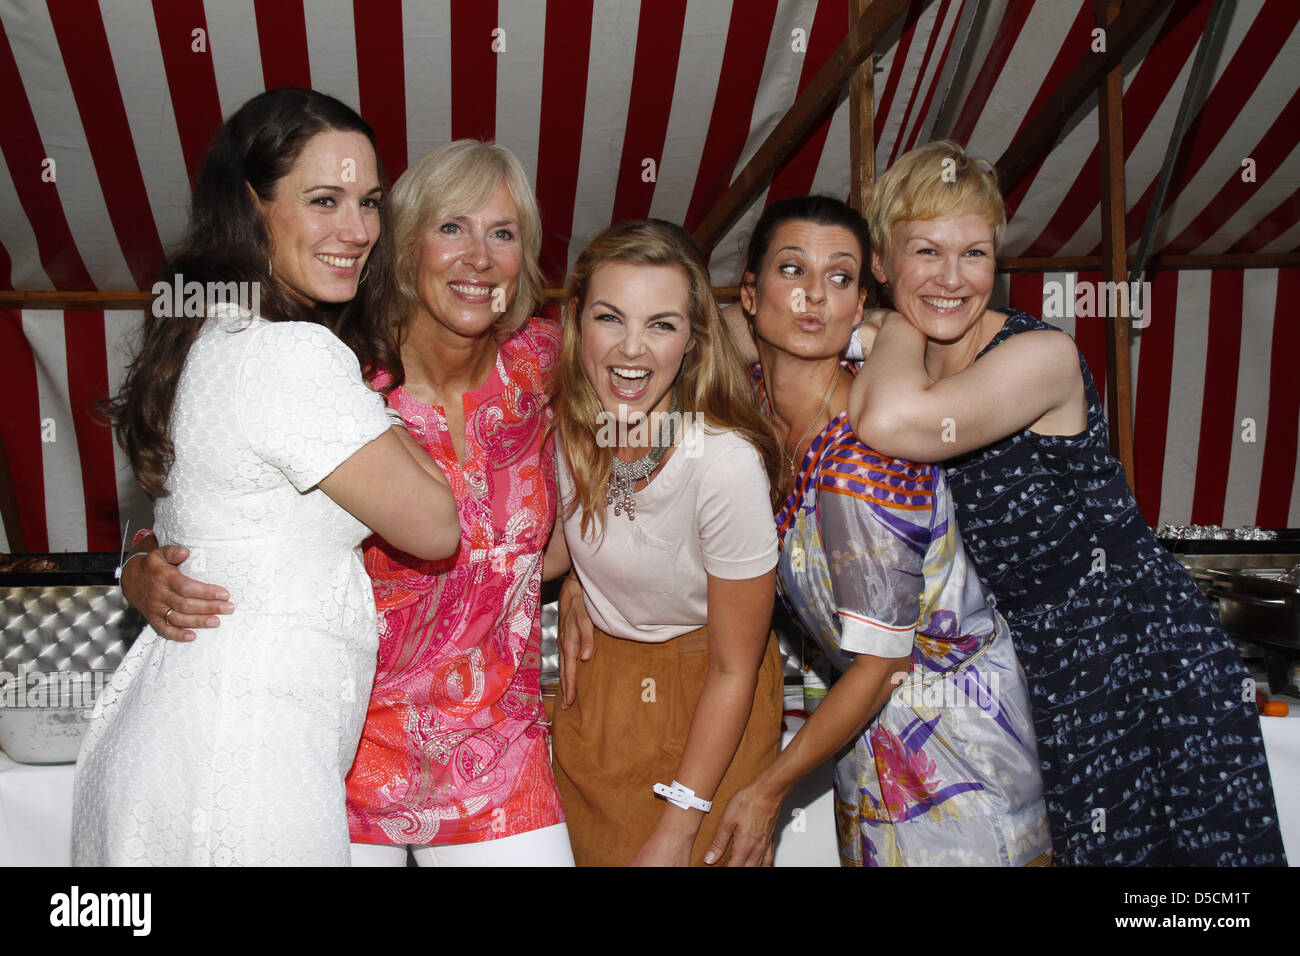 Simone Panteleit, Gaby Papenburg, Annika Kipp, Marlene Lufen und Karen Heinrichs am Abend Grill von "Sat 1 Stockfoto